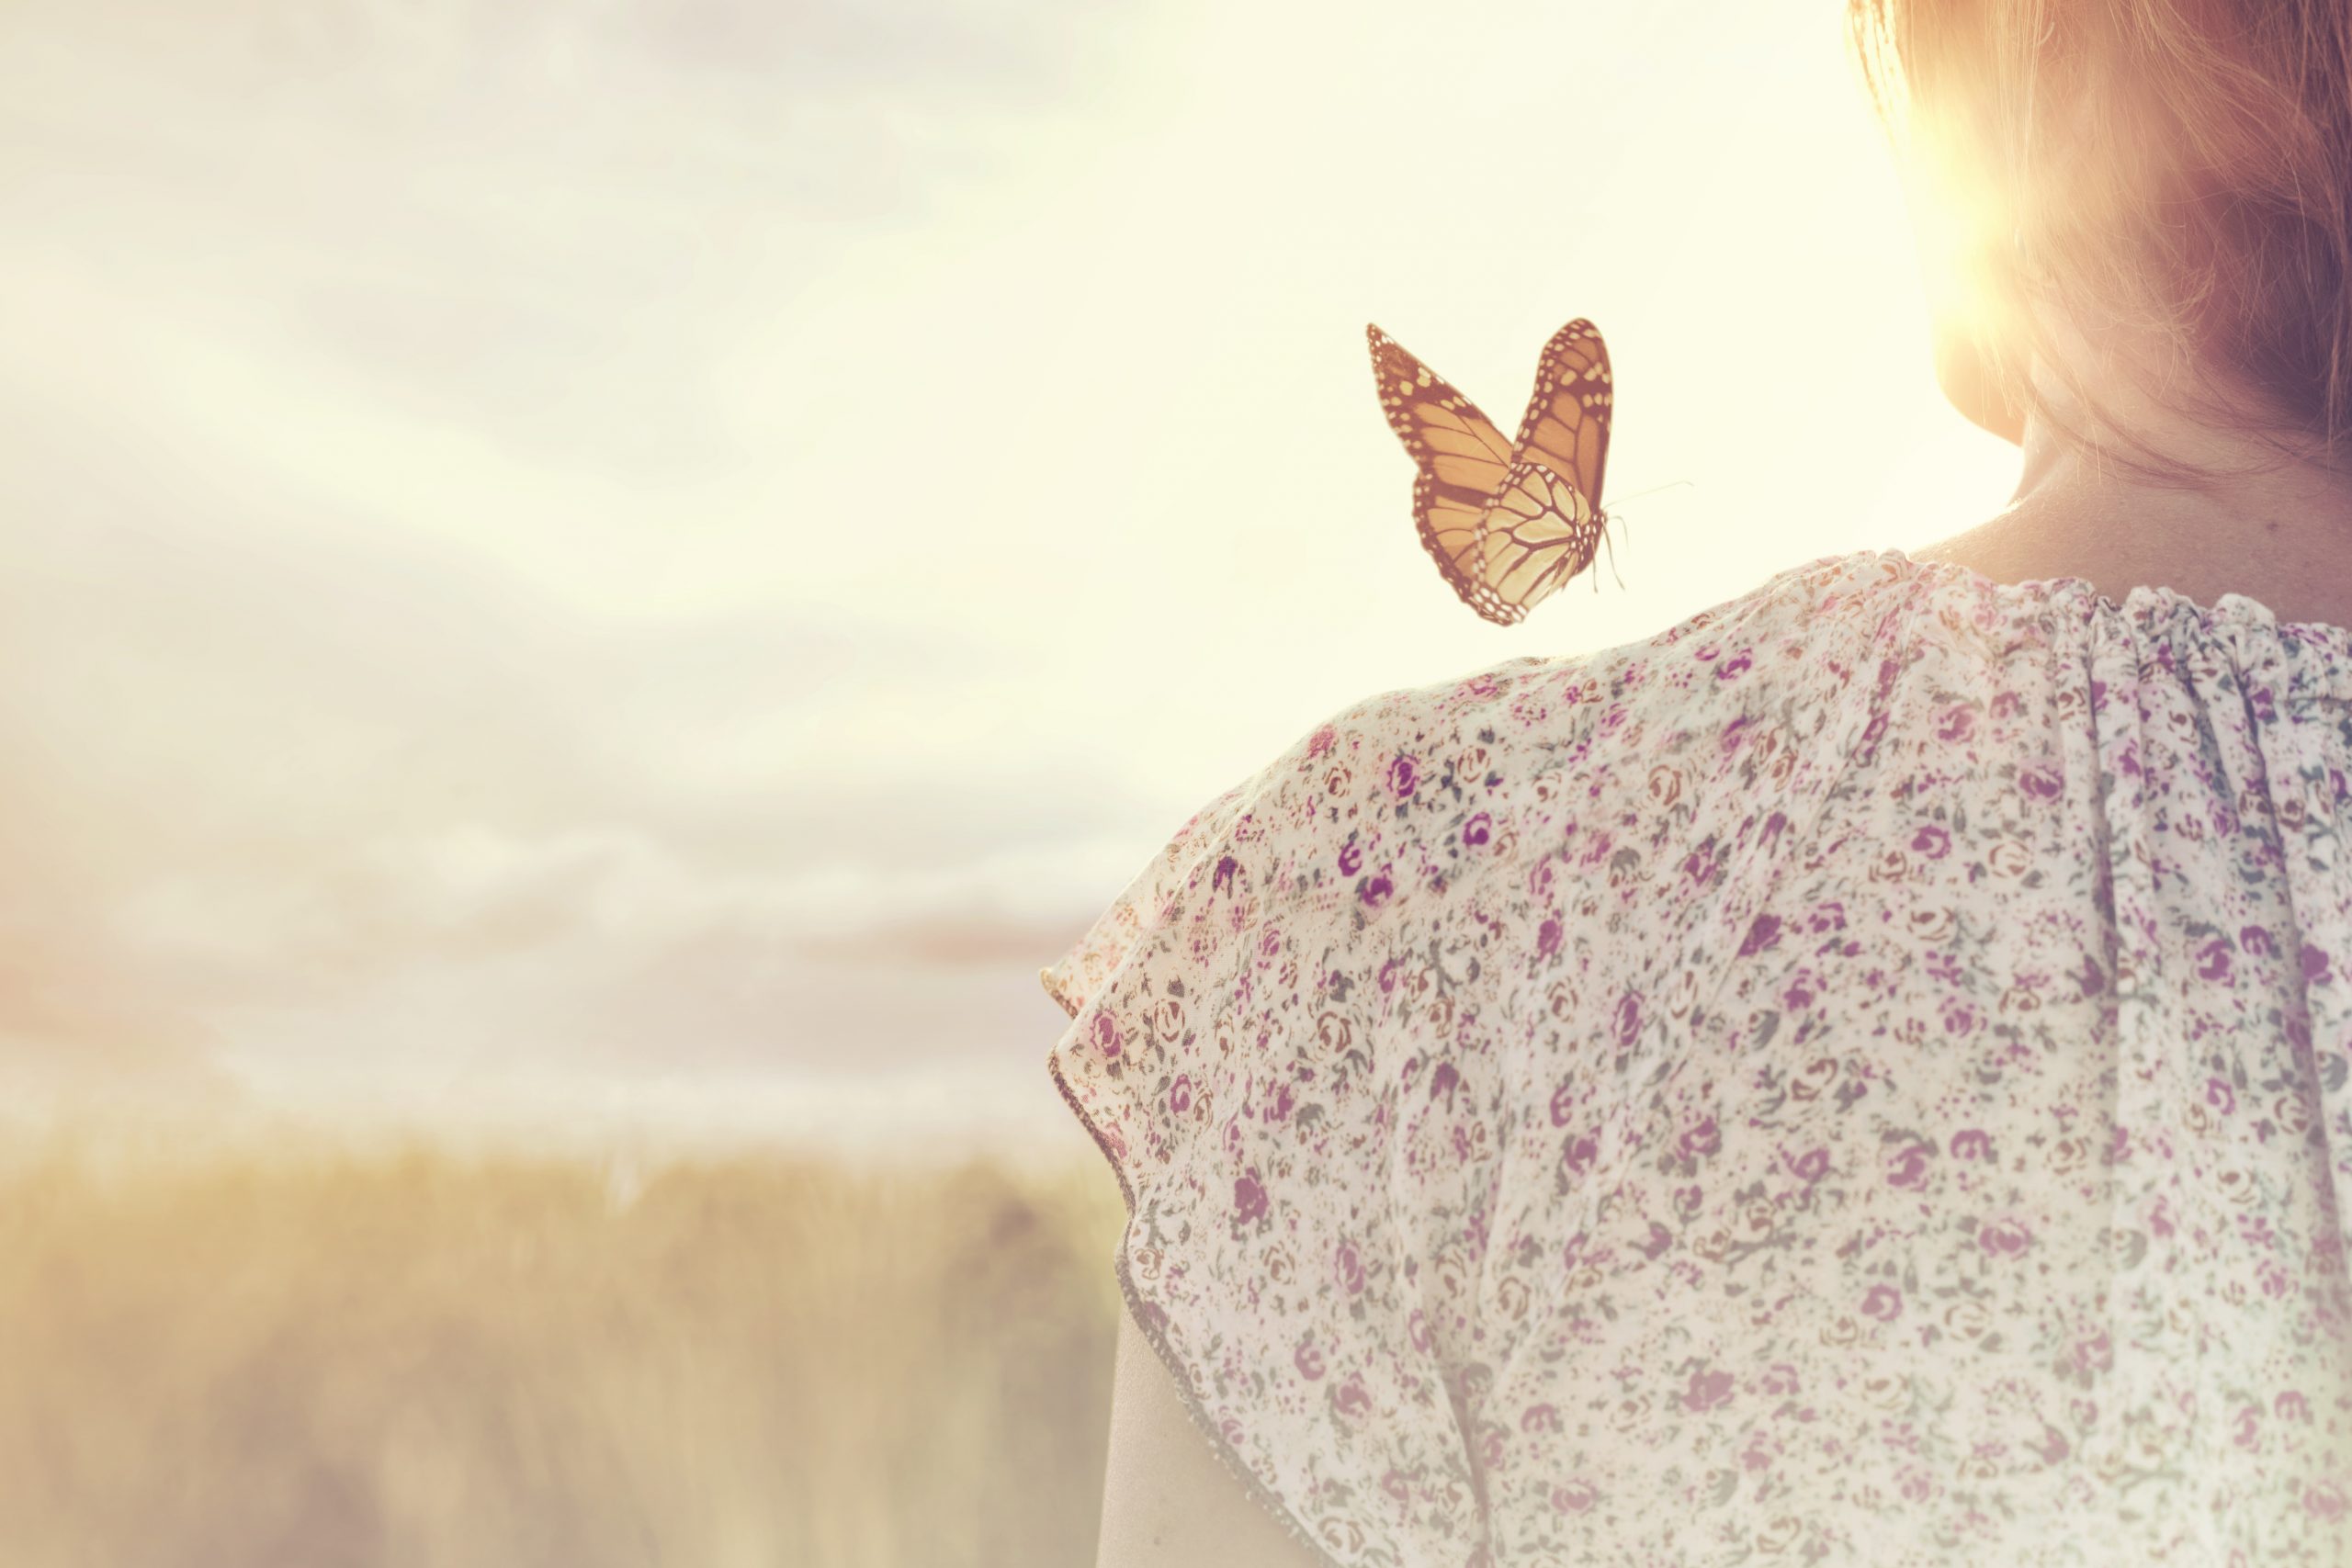 Messbare Erfolge bei Kundengewinnung - zeigte Frau mit Schmetterling auf der Schulter